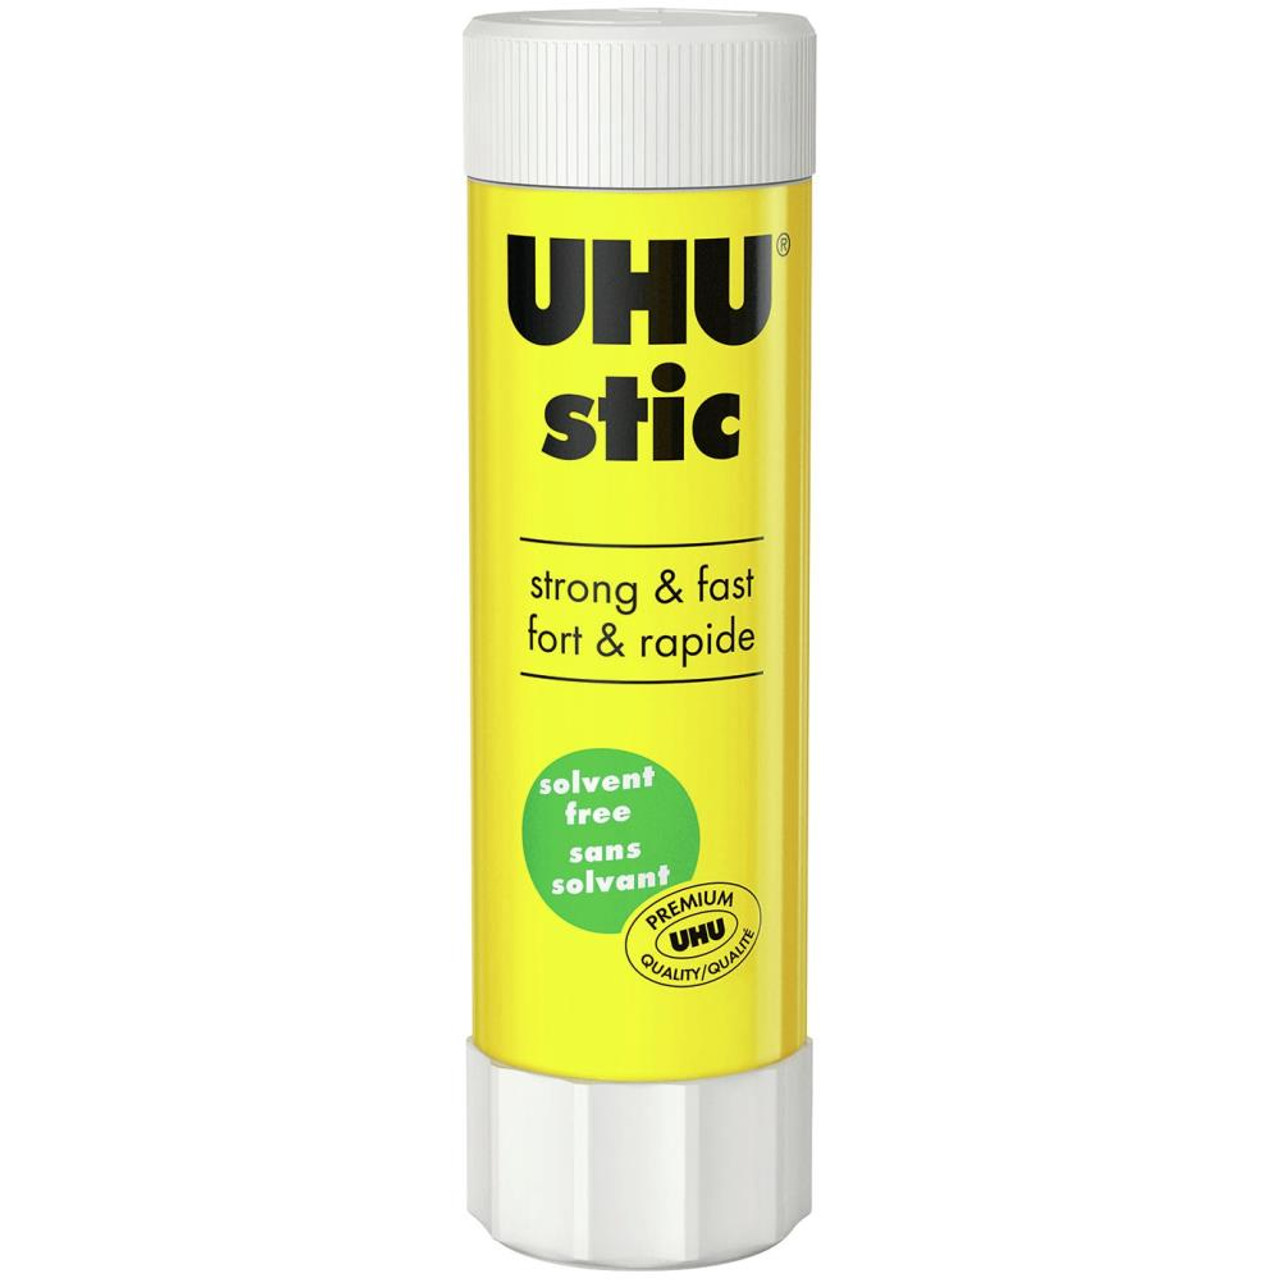 UHU Stic Glue Stick